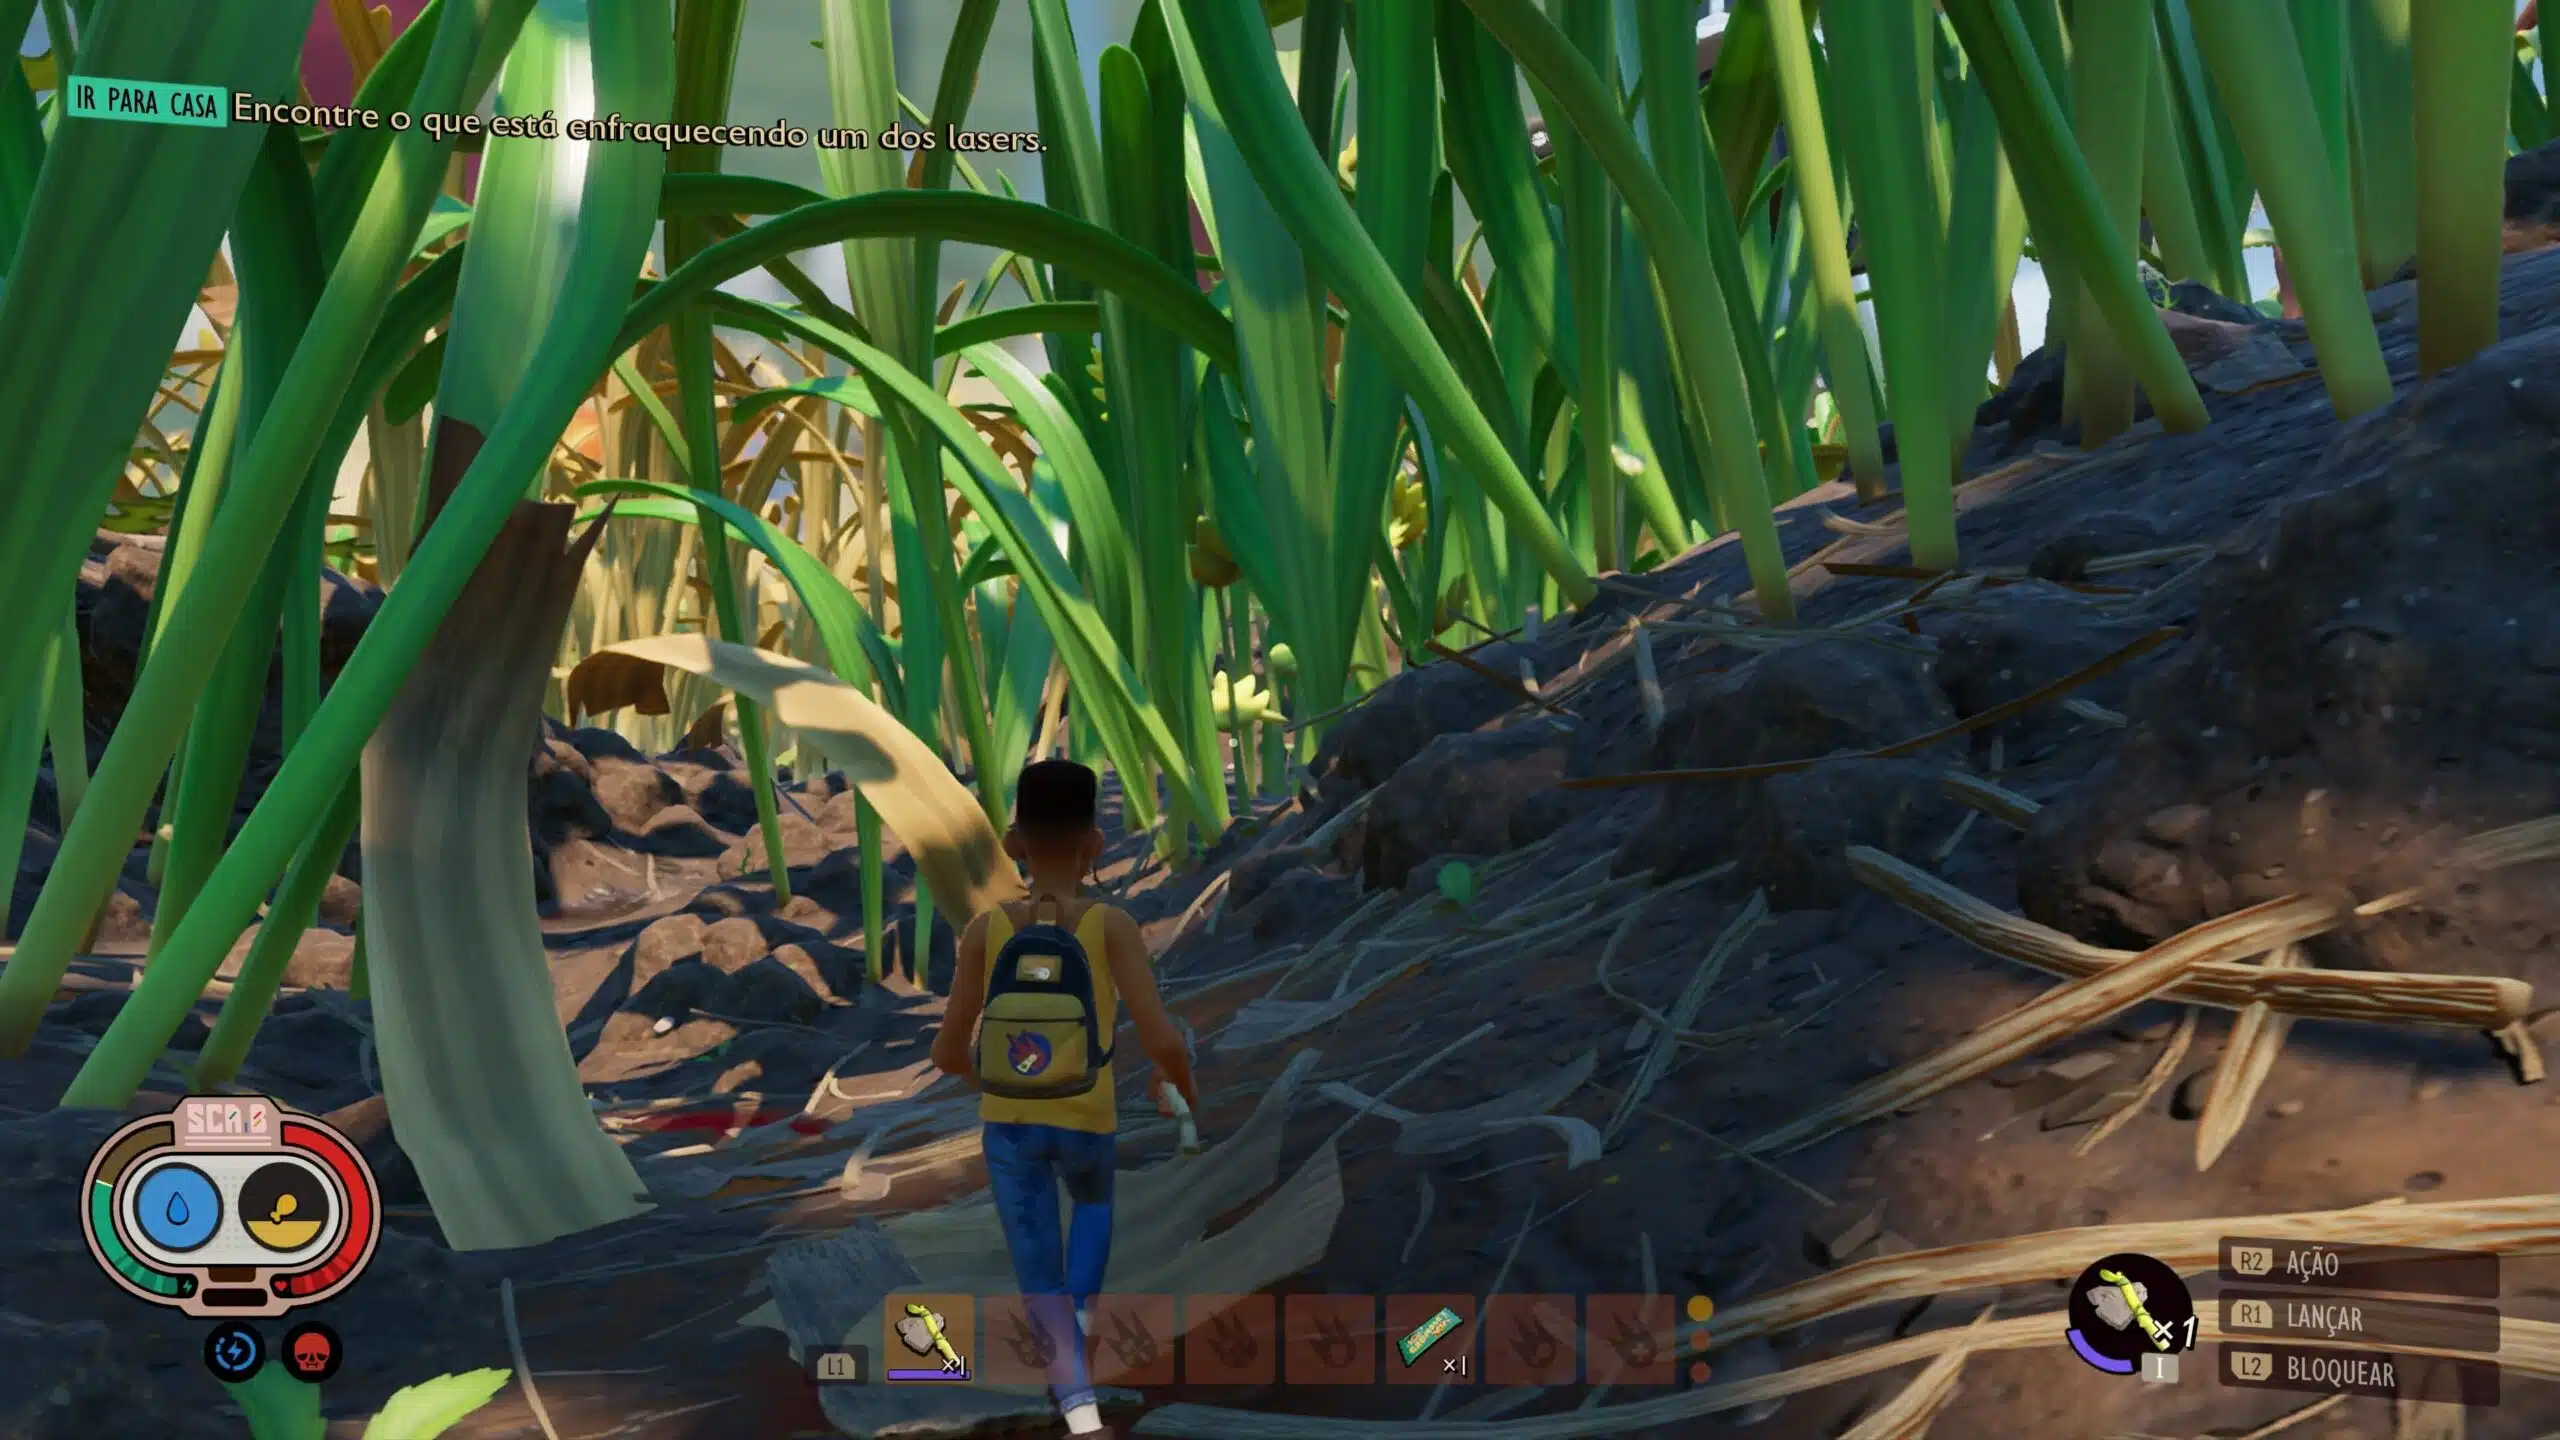 Grounded imagem do gameplay mostrando os status e o ambiente